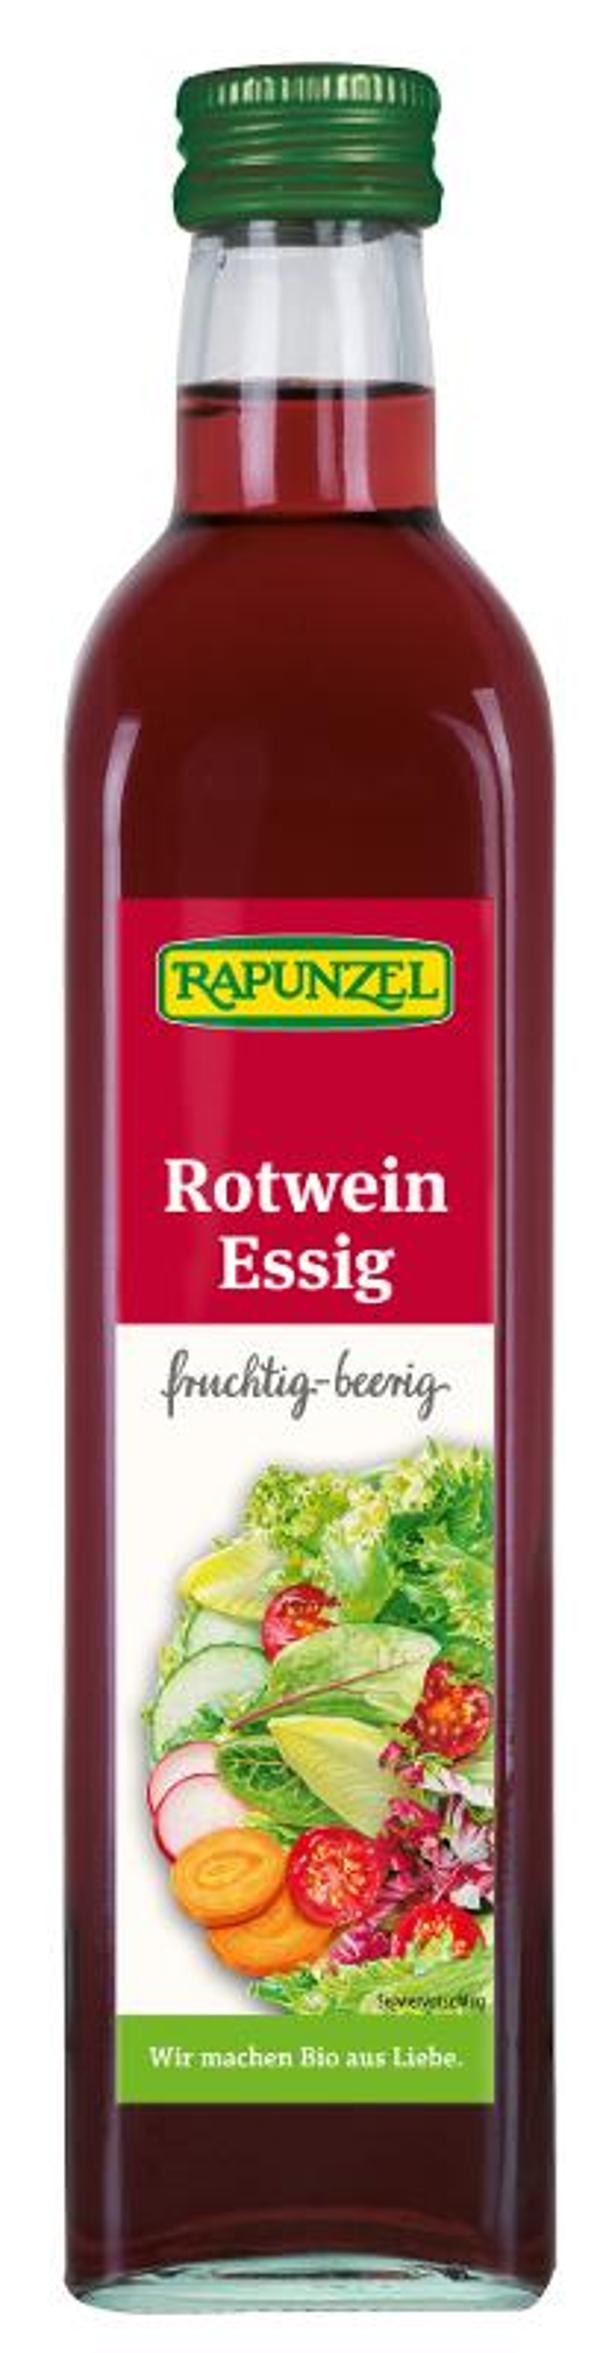 Produktfoto zu Rotweinessig von Rapunzel